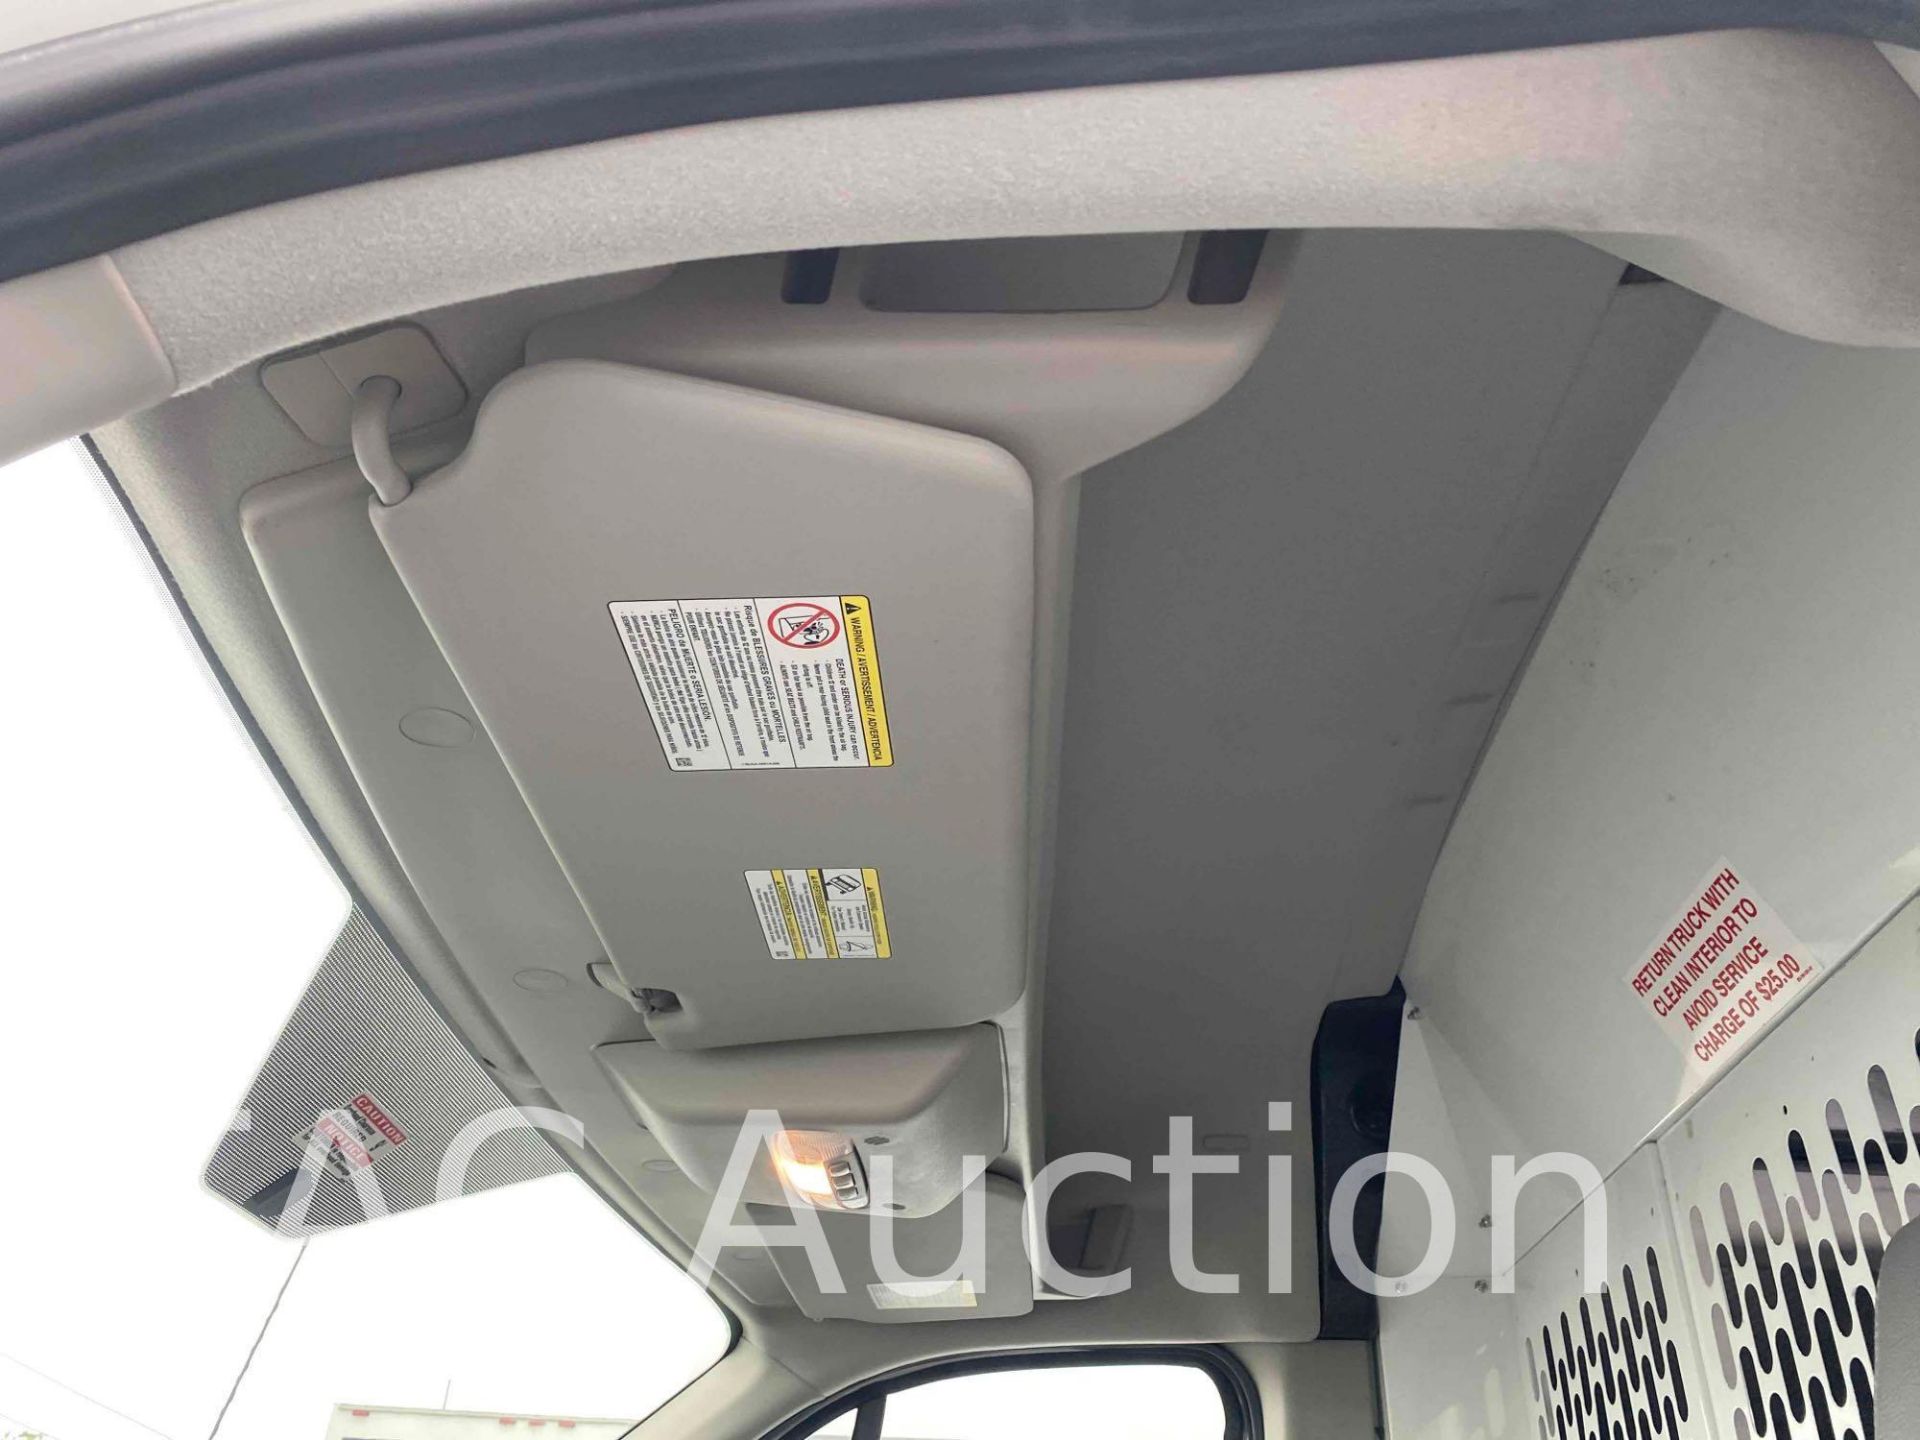 2019 Ford Transit 150 Cargo Van - Image 11 of 37